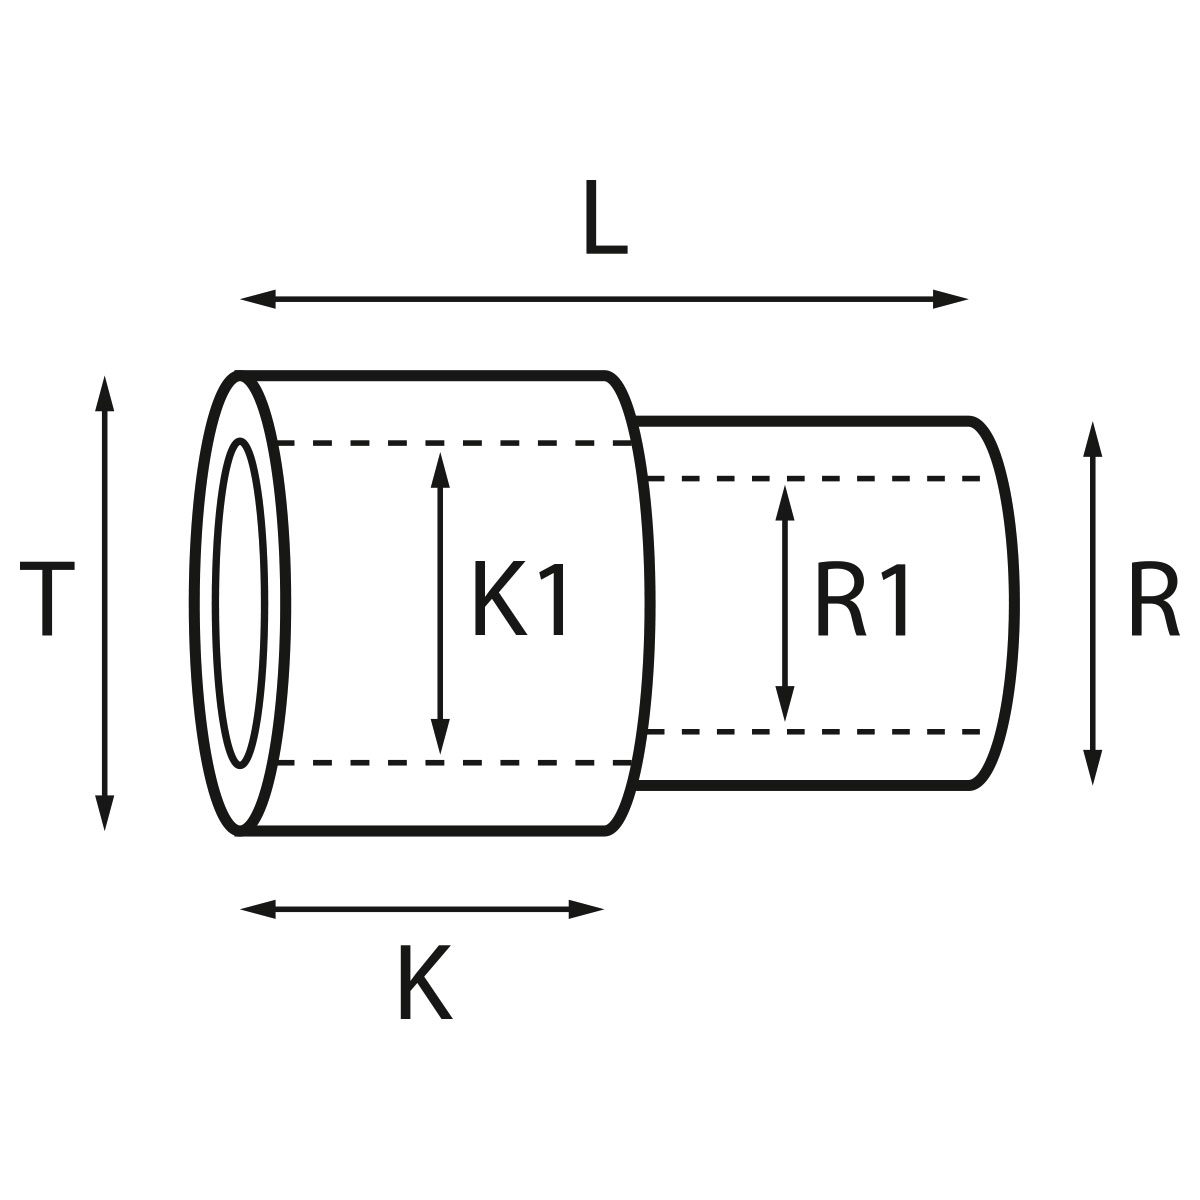 Gehäusetube Typ AS 13827, Tubus Ø 2,5 mm, Gesamtlänge 3,2 mm, für wasserdichte Kronen